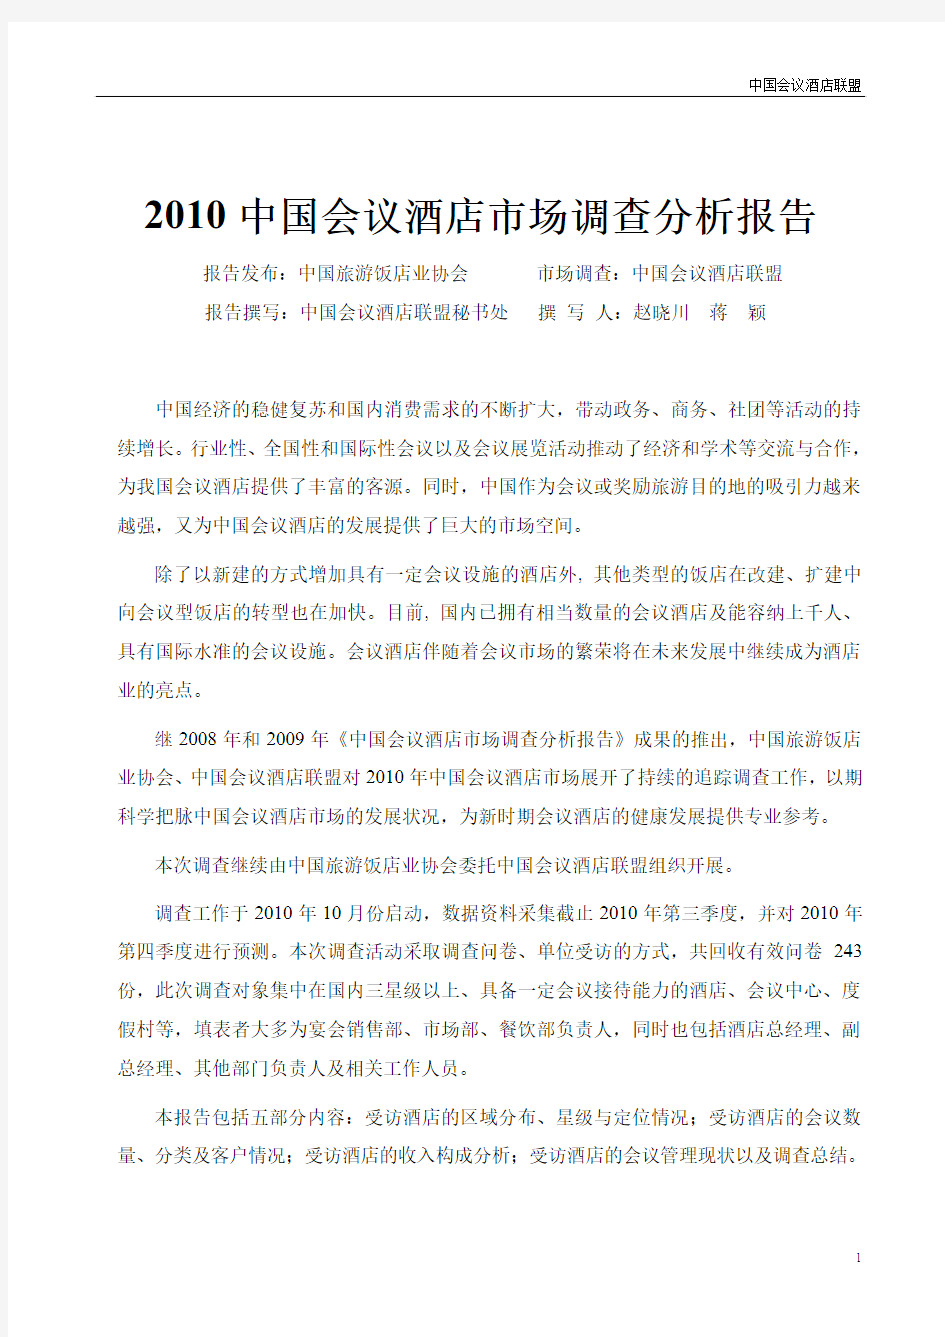 2010中国会议酒店市场调查分析报告